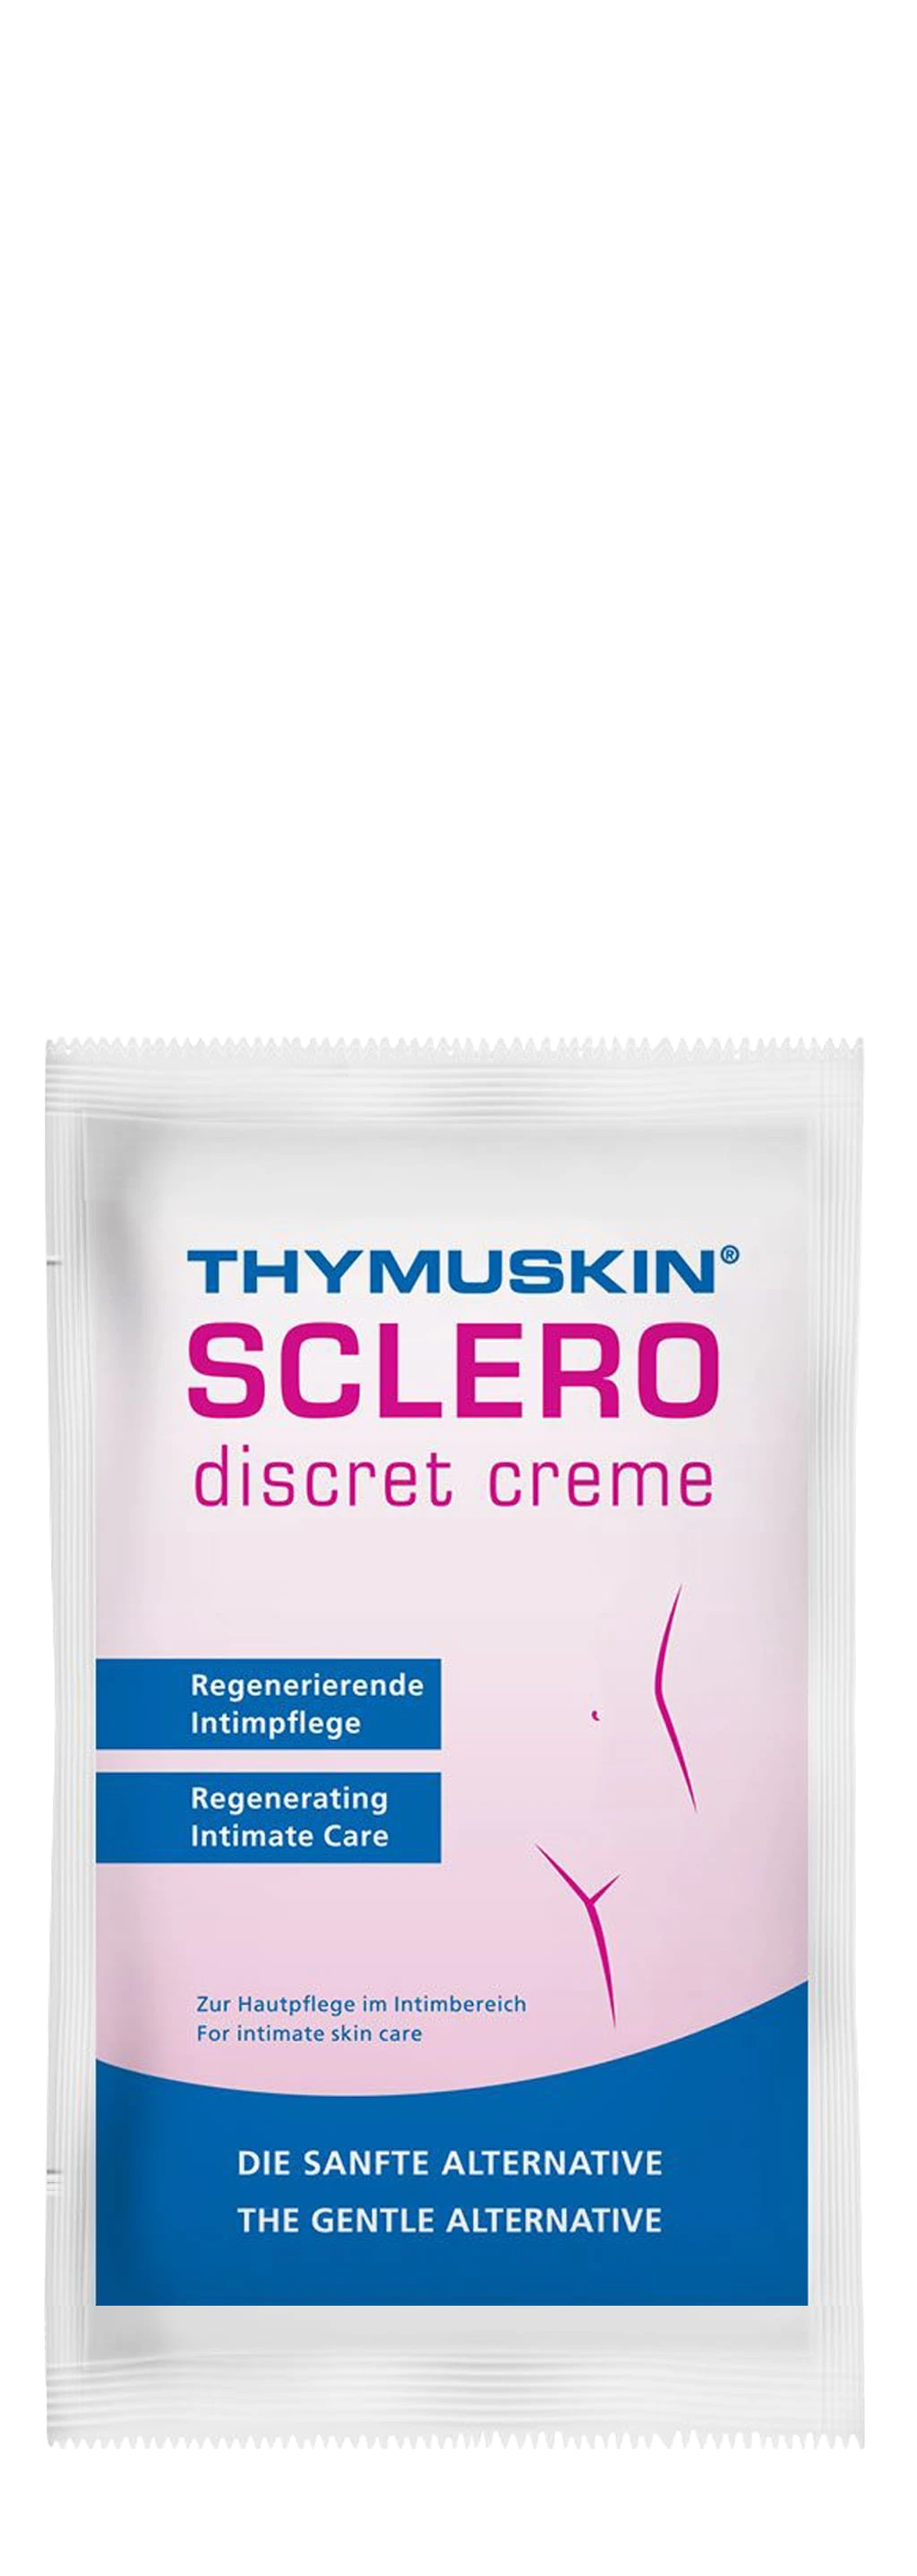 SCLERO discret crème (exemple)